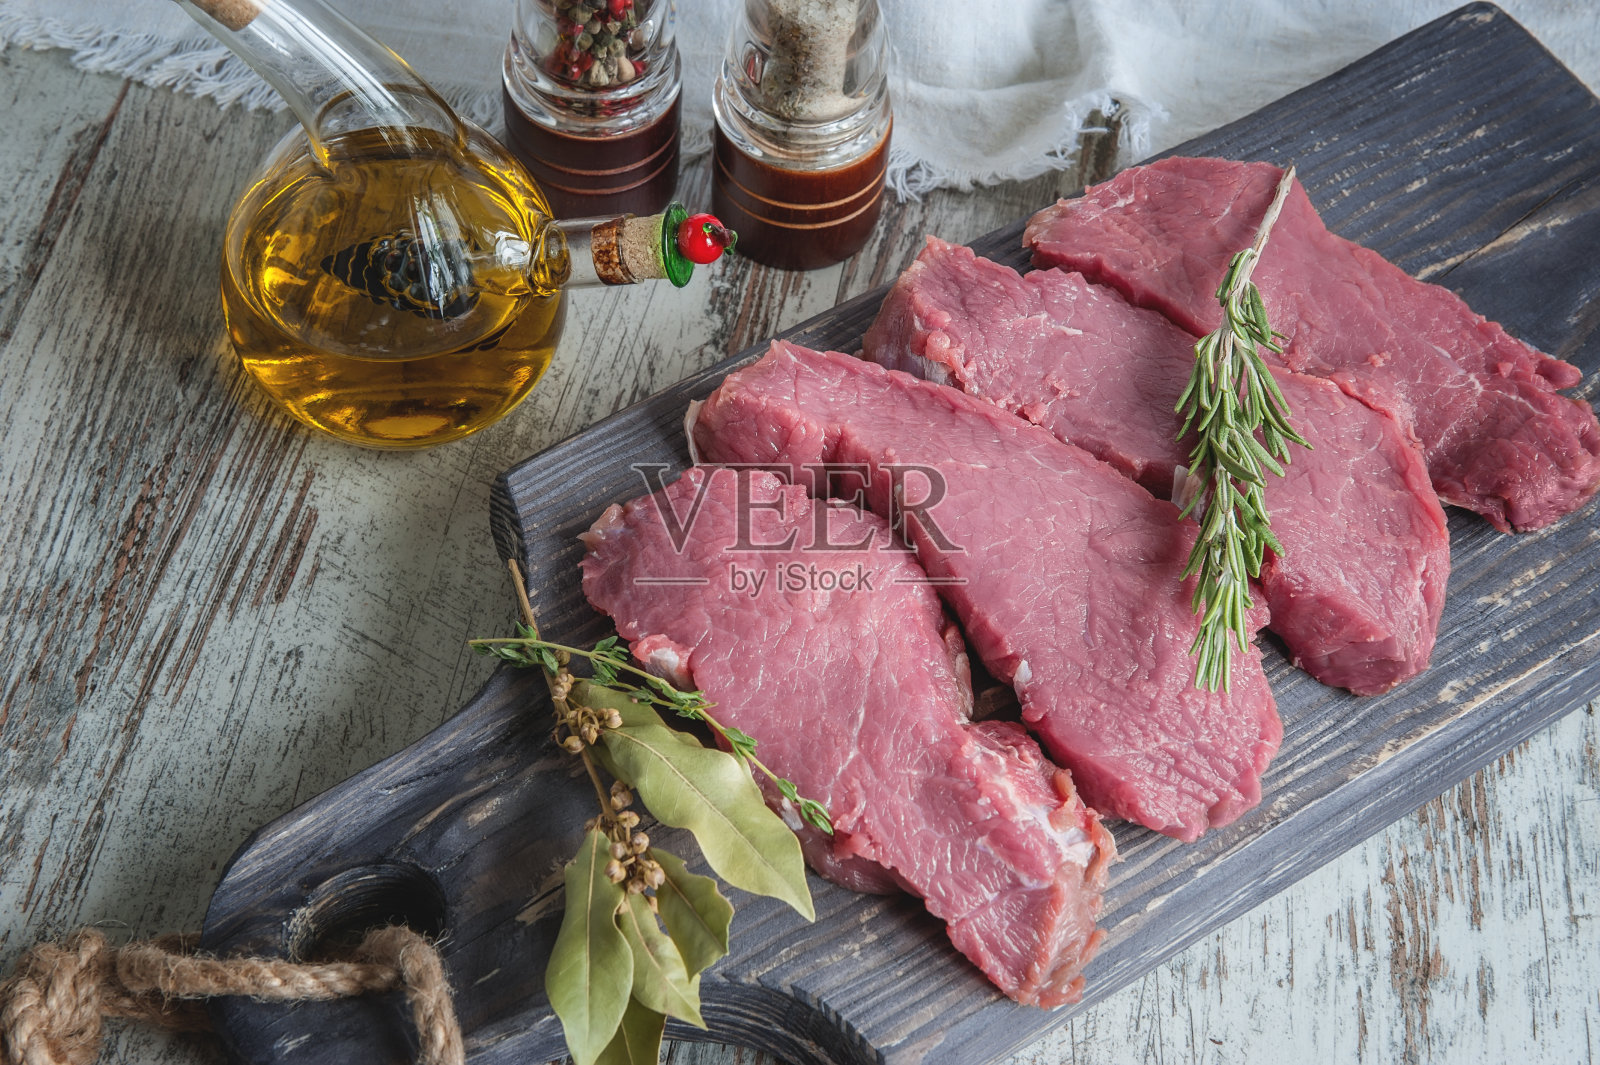 将切好的牛肉放在木砧板上烤，用月桂叶、迷迭香、橄榄油和普罗旺斯香草腌制，以一种乡村风格照片摄影图片